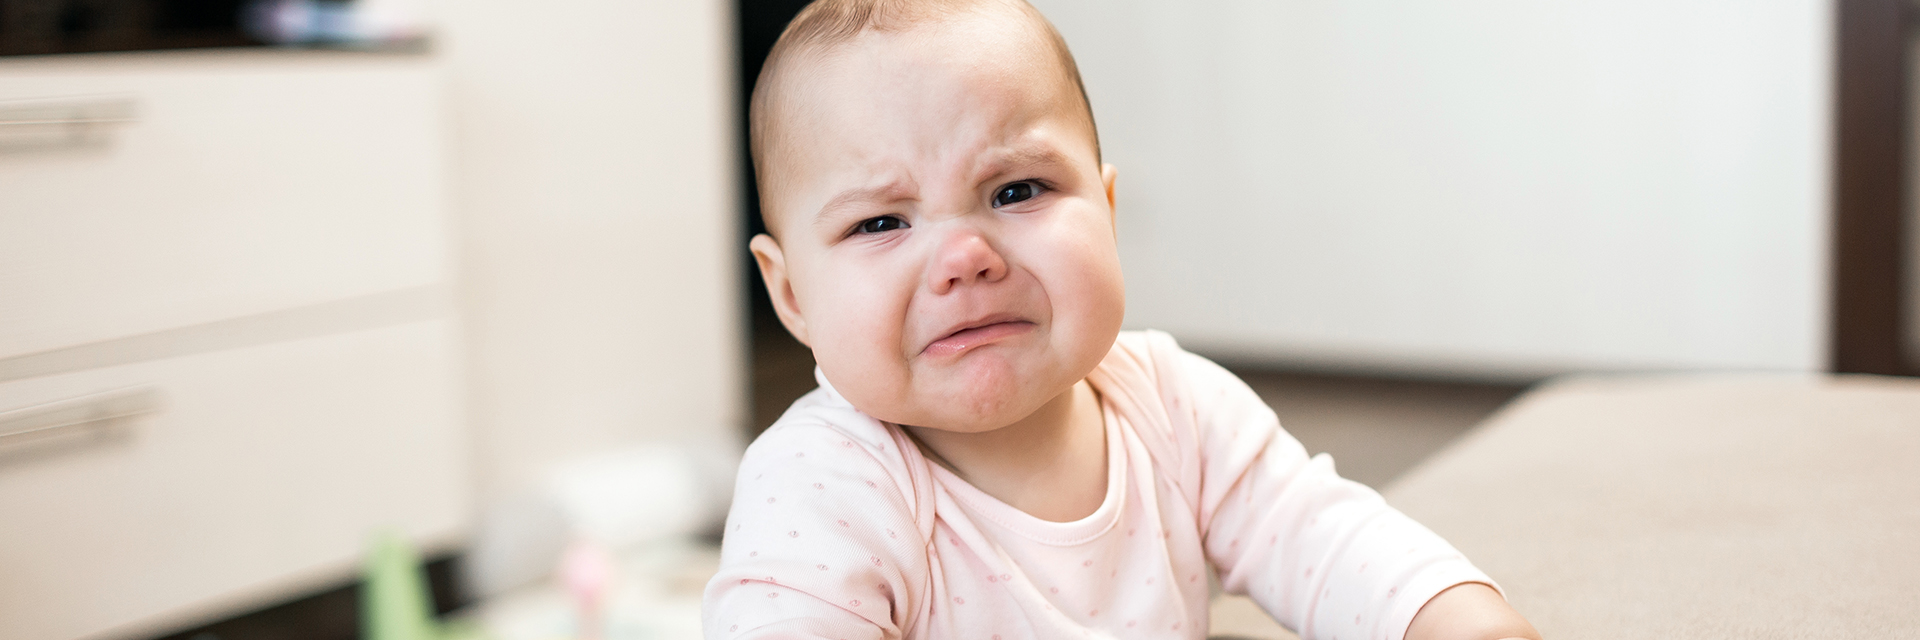 Crying upset infant girl